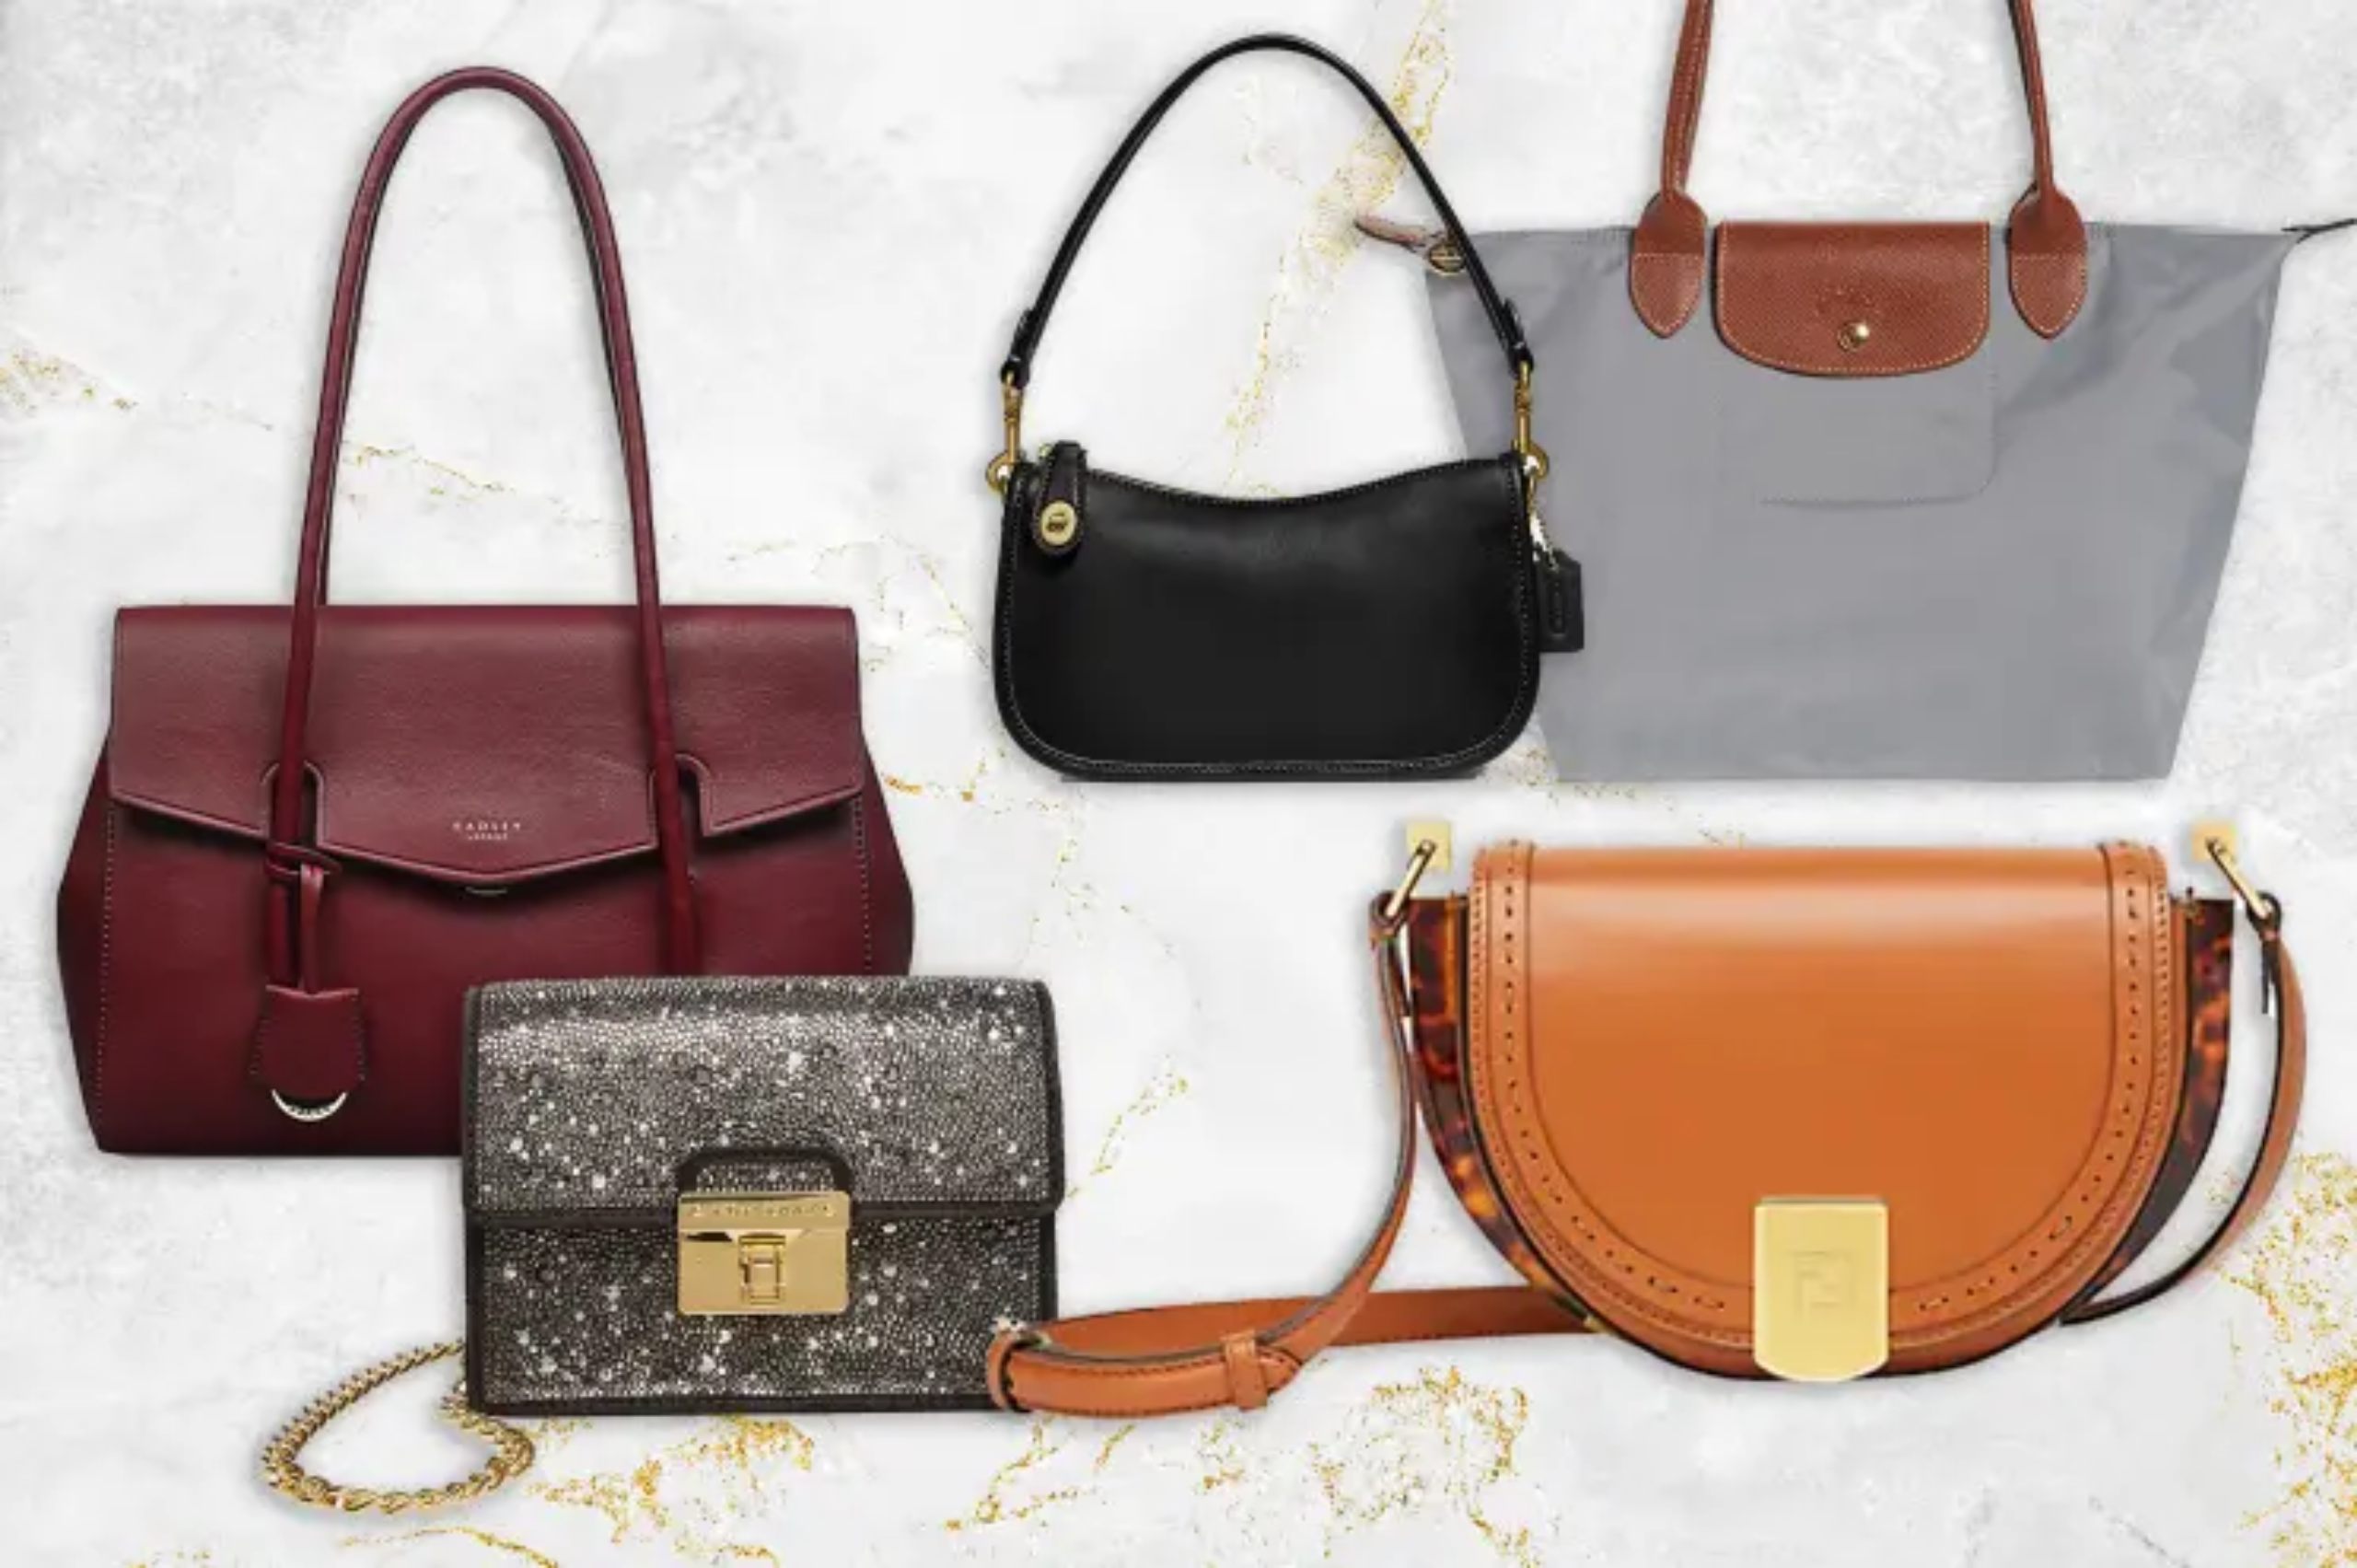 Amazon handbags under $25 ladies